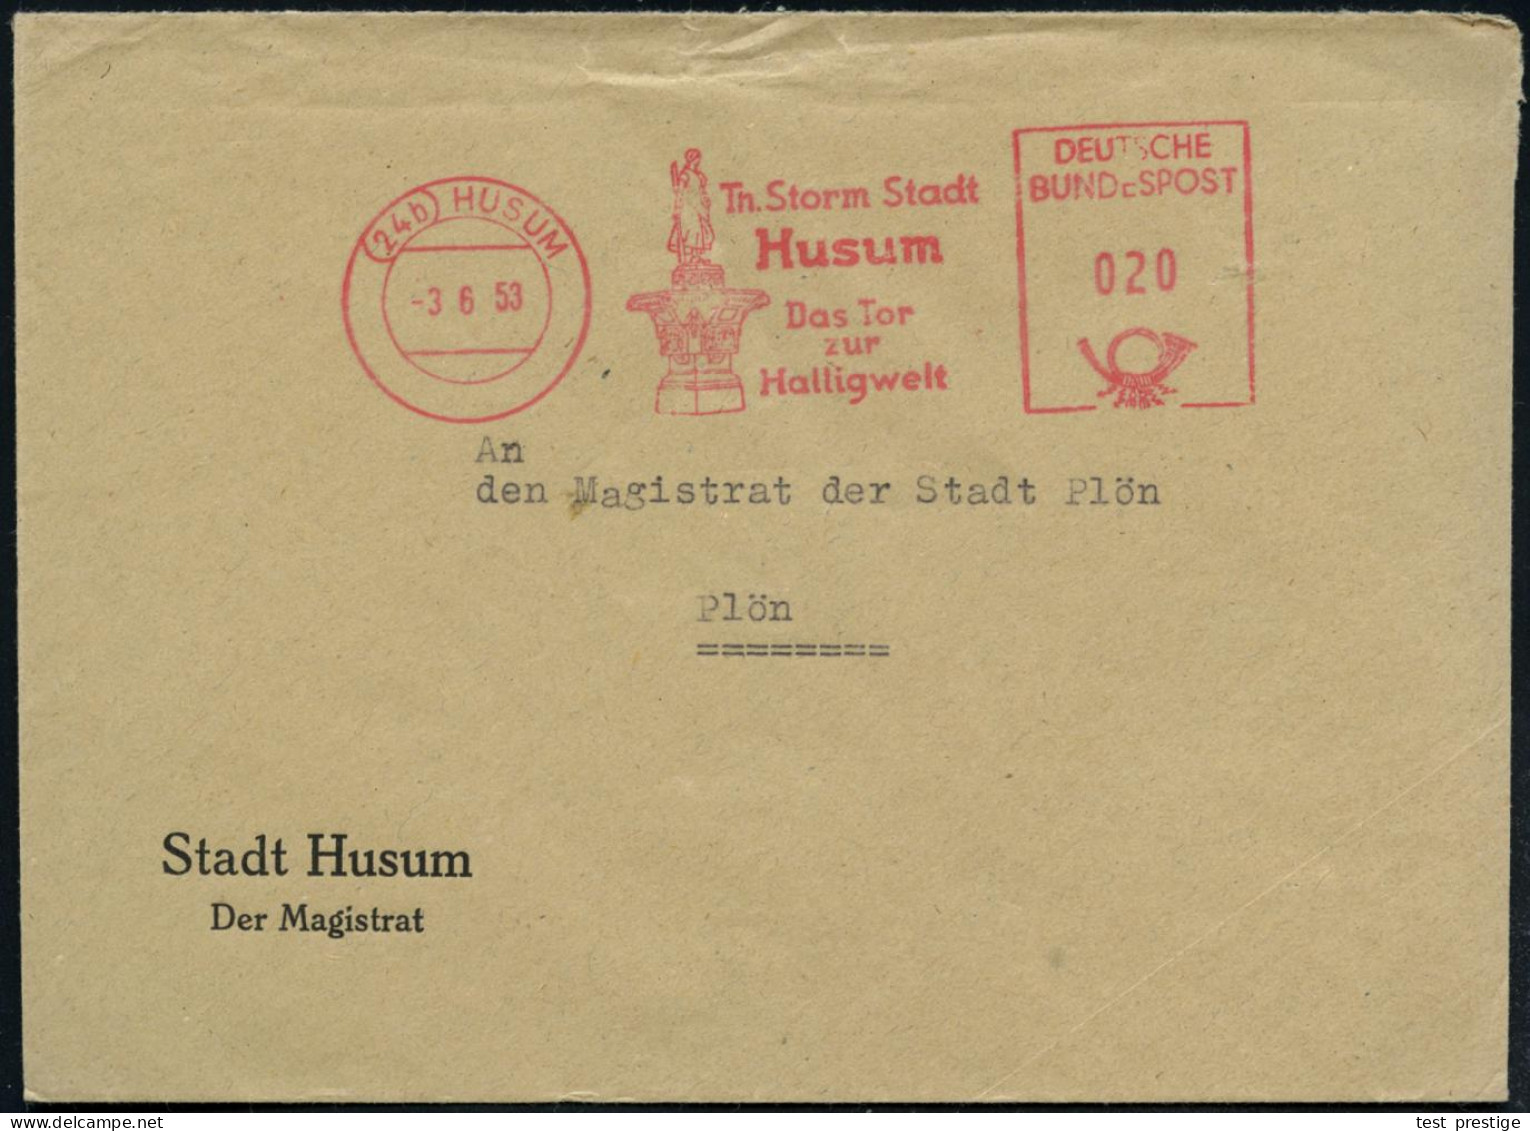 (24b) HUSUM/ Th.Storm Stadt/ Das Tor/ Zur/ Halligwelt 1953 (3.6.) AFS Postalia (Asmussen-Waldsen-Brunnen) Kommunalbf, (D - Ecrivains